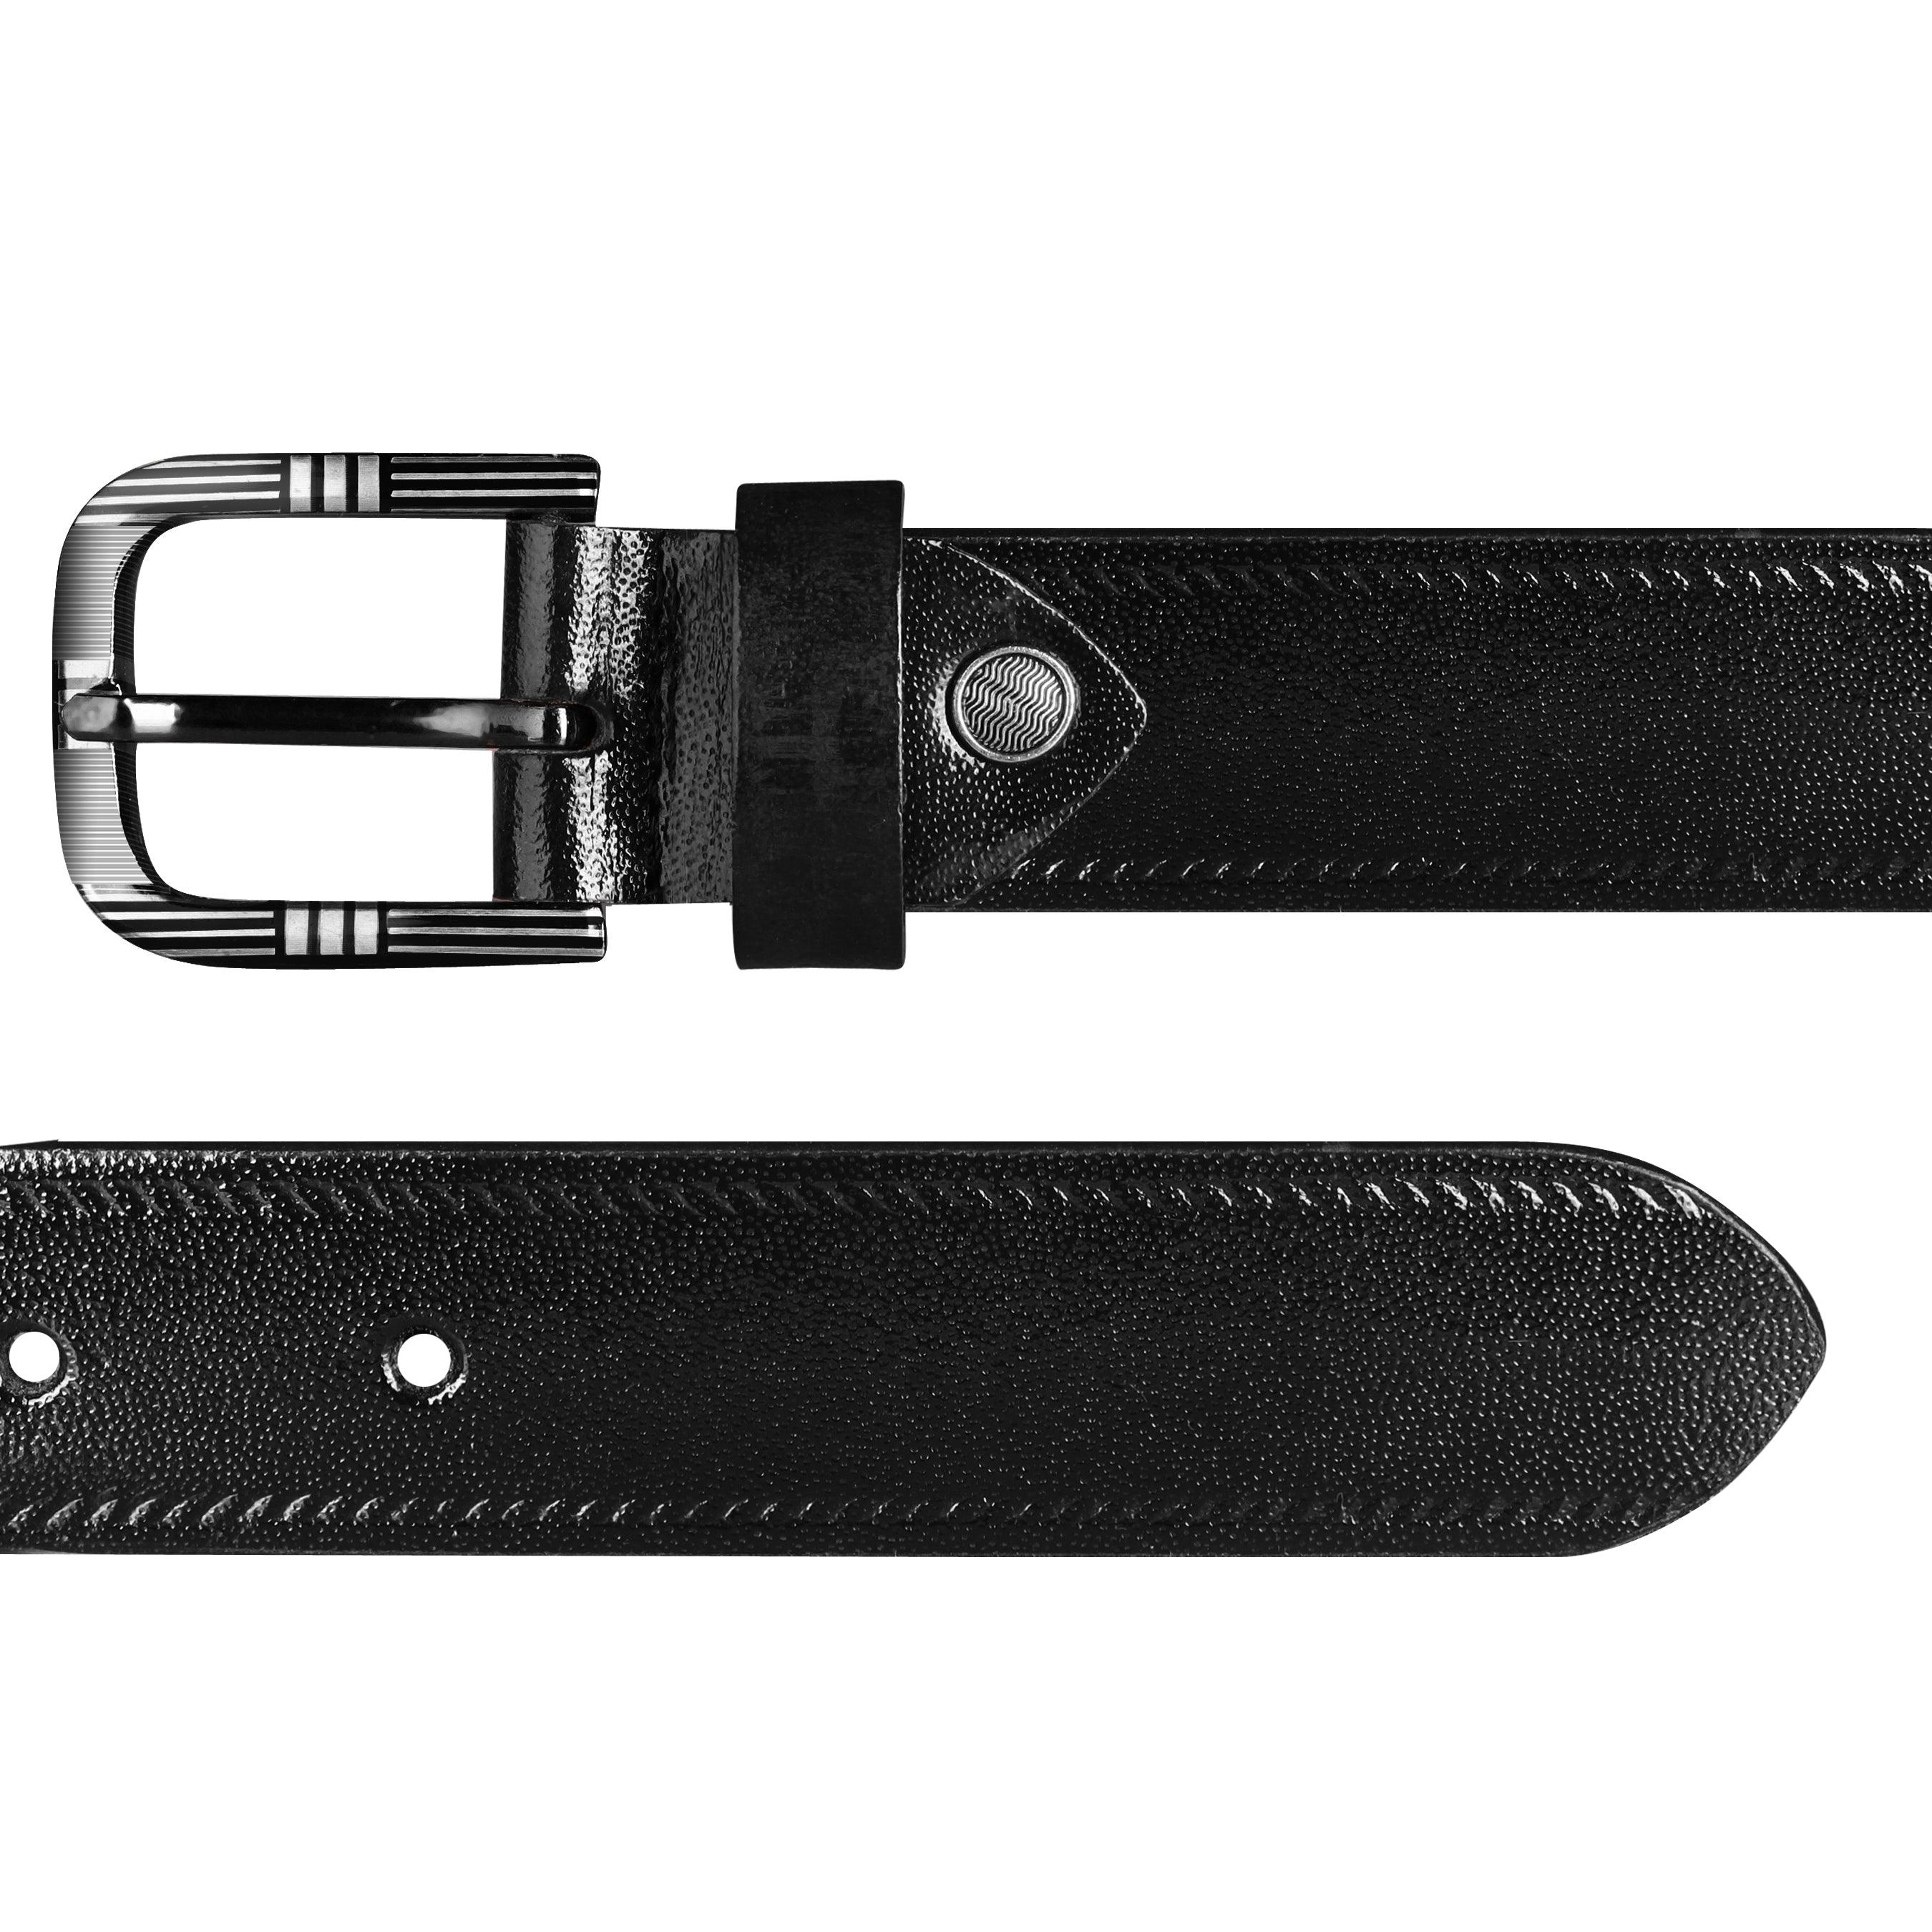 Jaxer Embossed Black Leather Belt for Men - JXBLT107 - Jainx Store